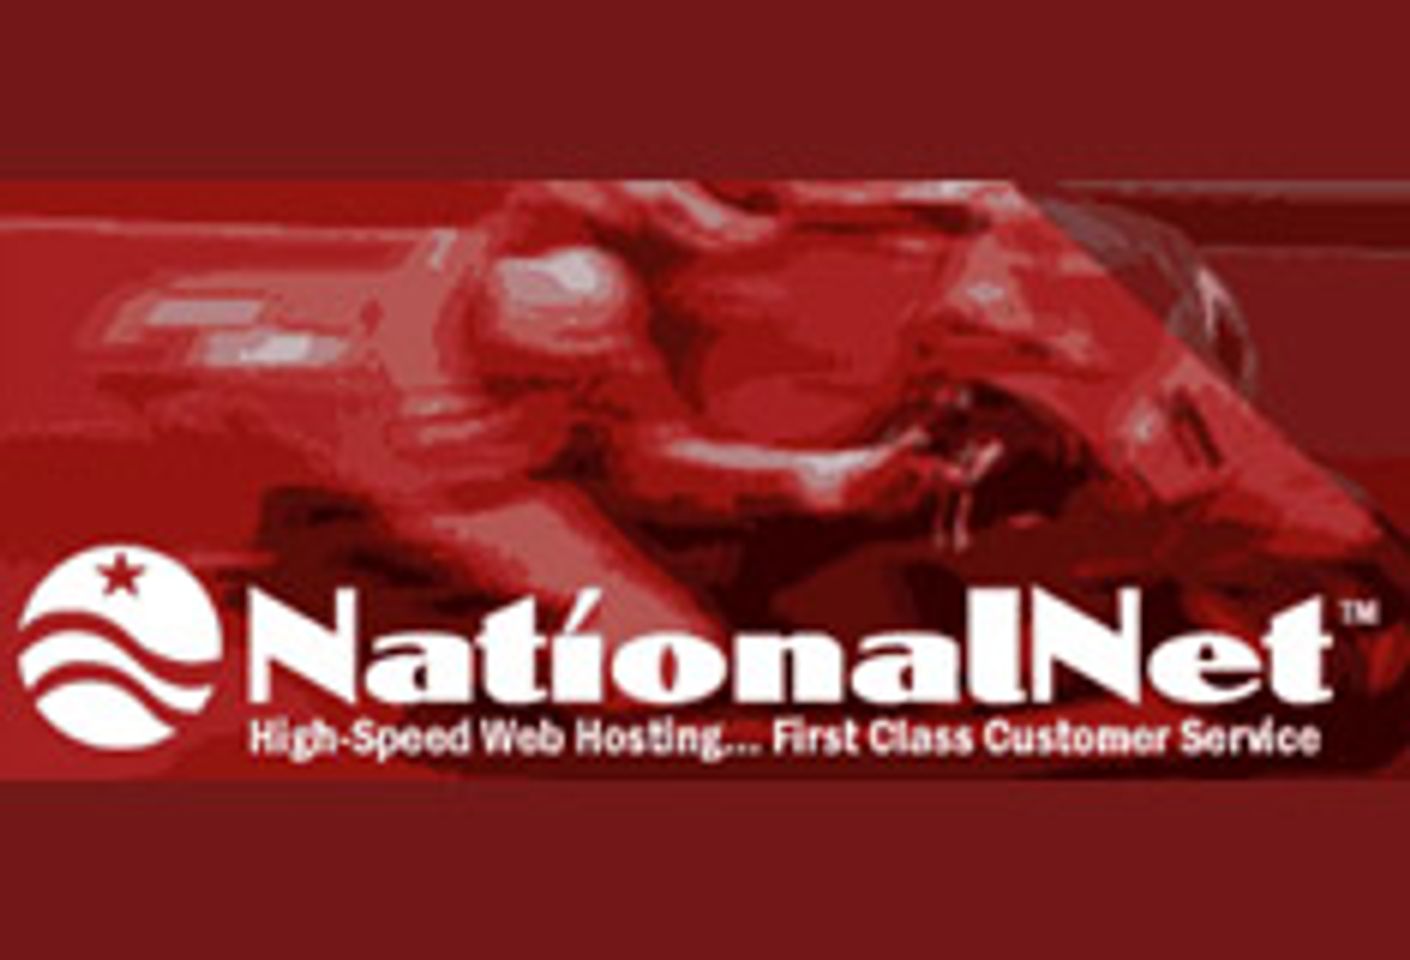 WebAir Hands NationalNet.com to National Net, Everyone Gets Happy